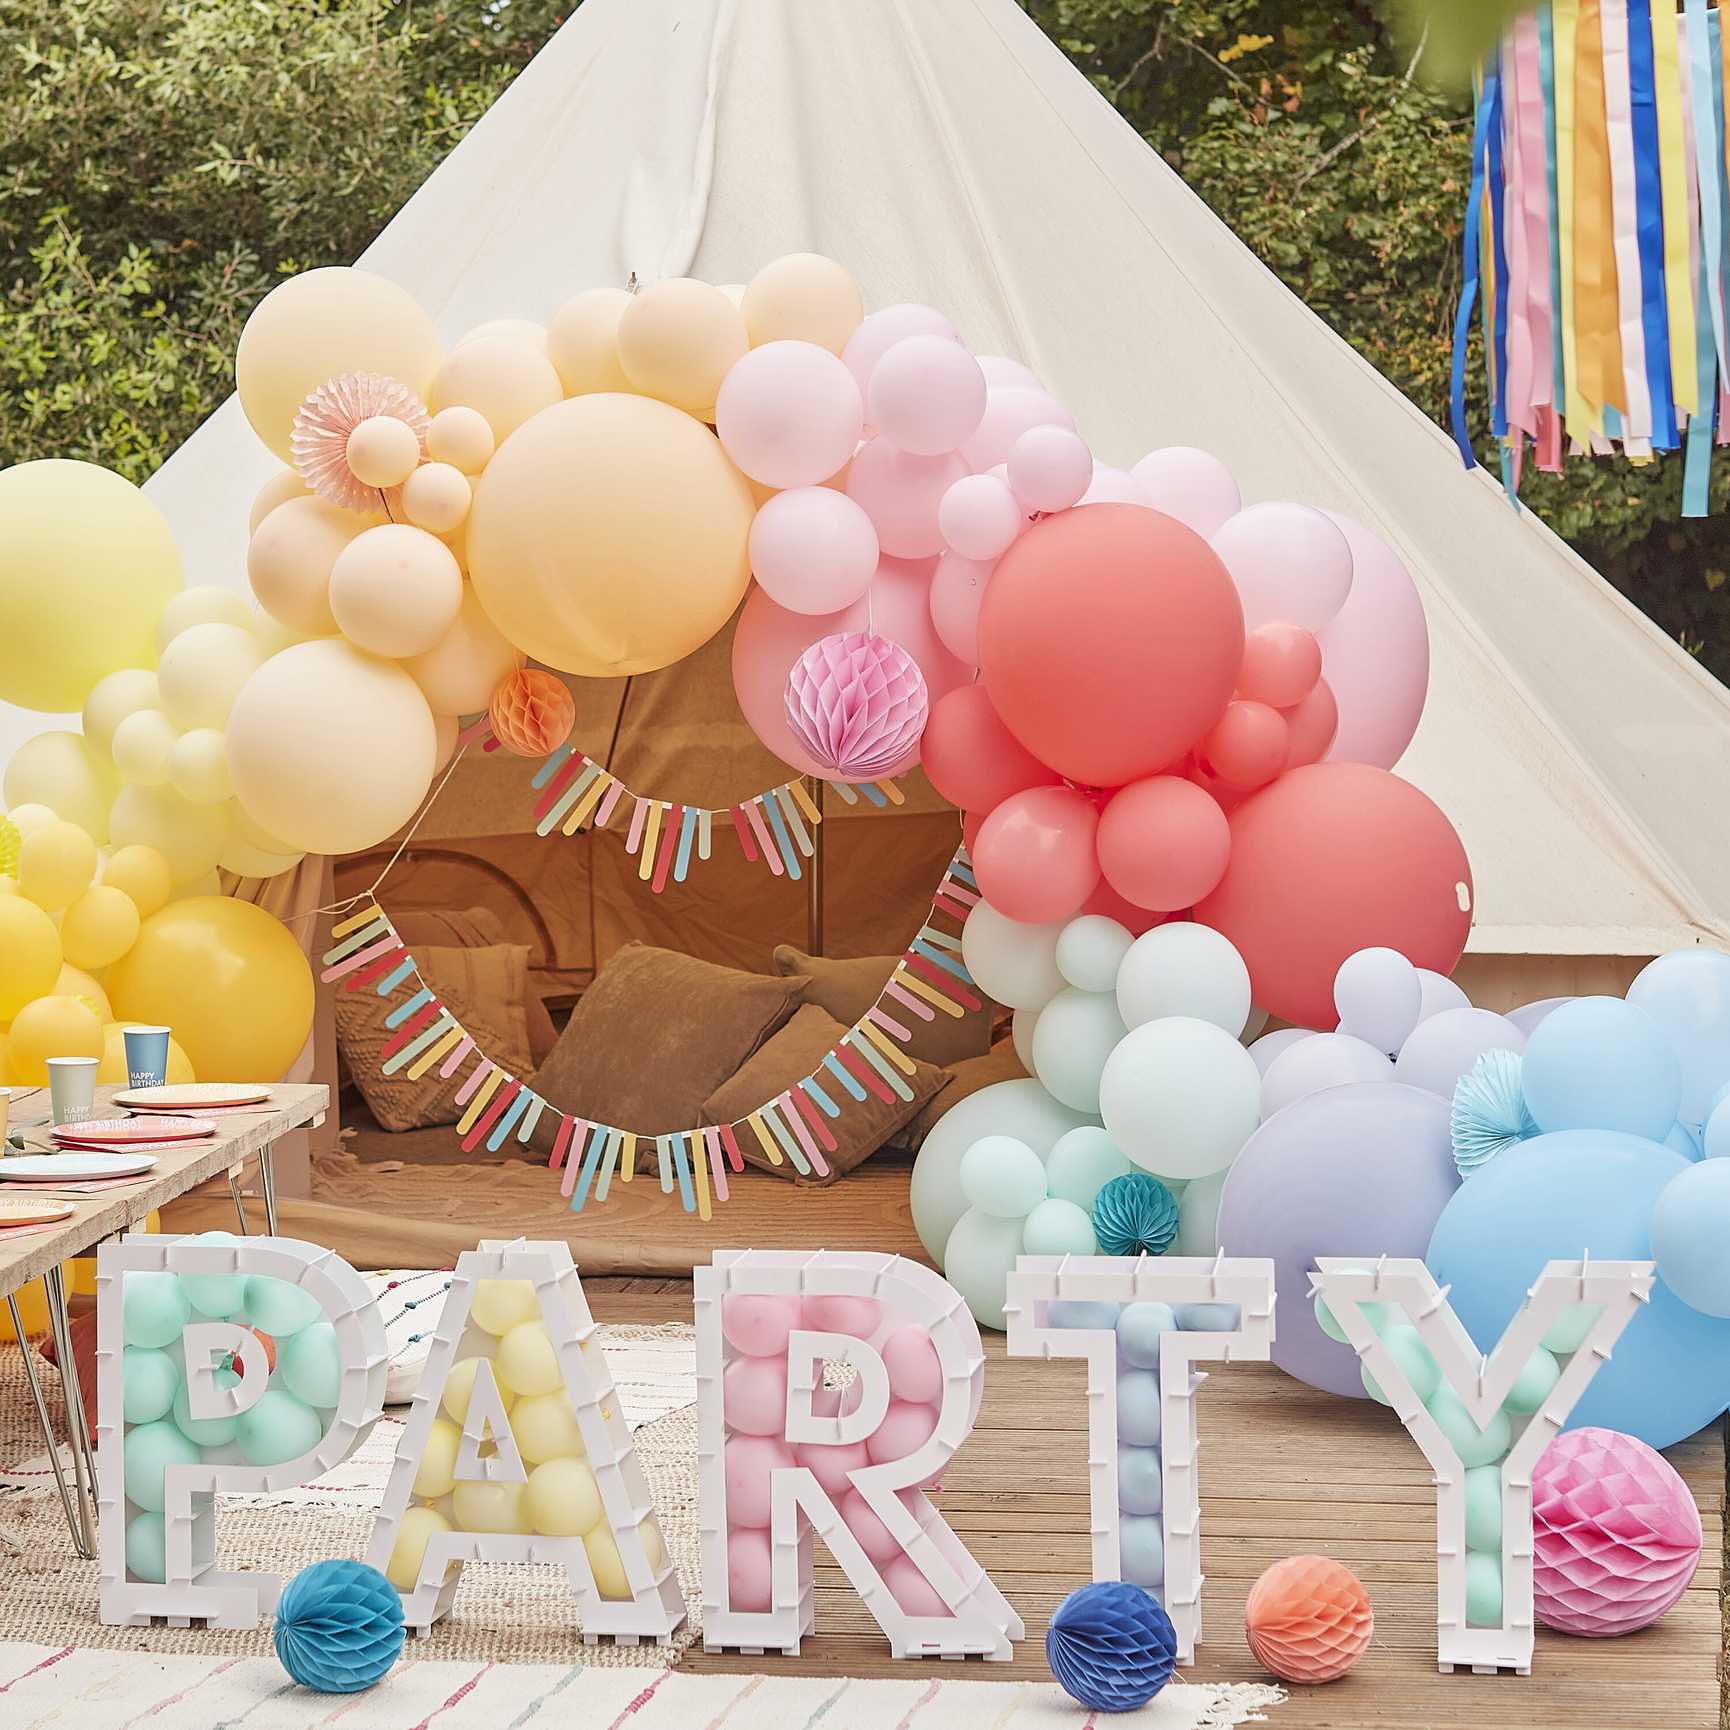 Comment organiser un anniversaire pour sa fille de 10 ans inoubliable ? -  Holly Party